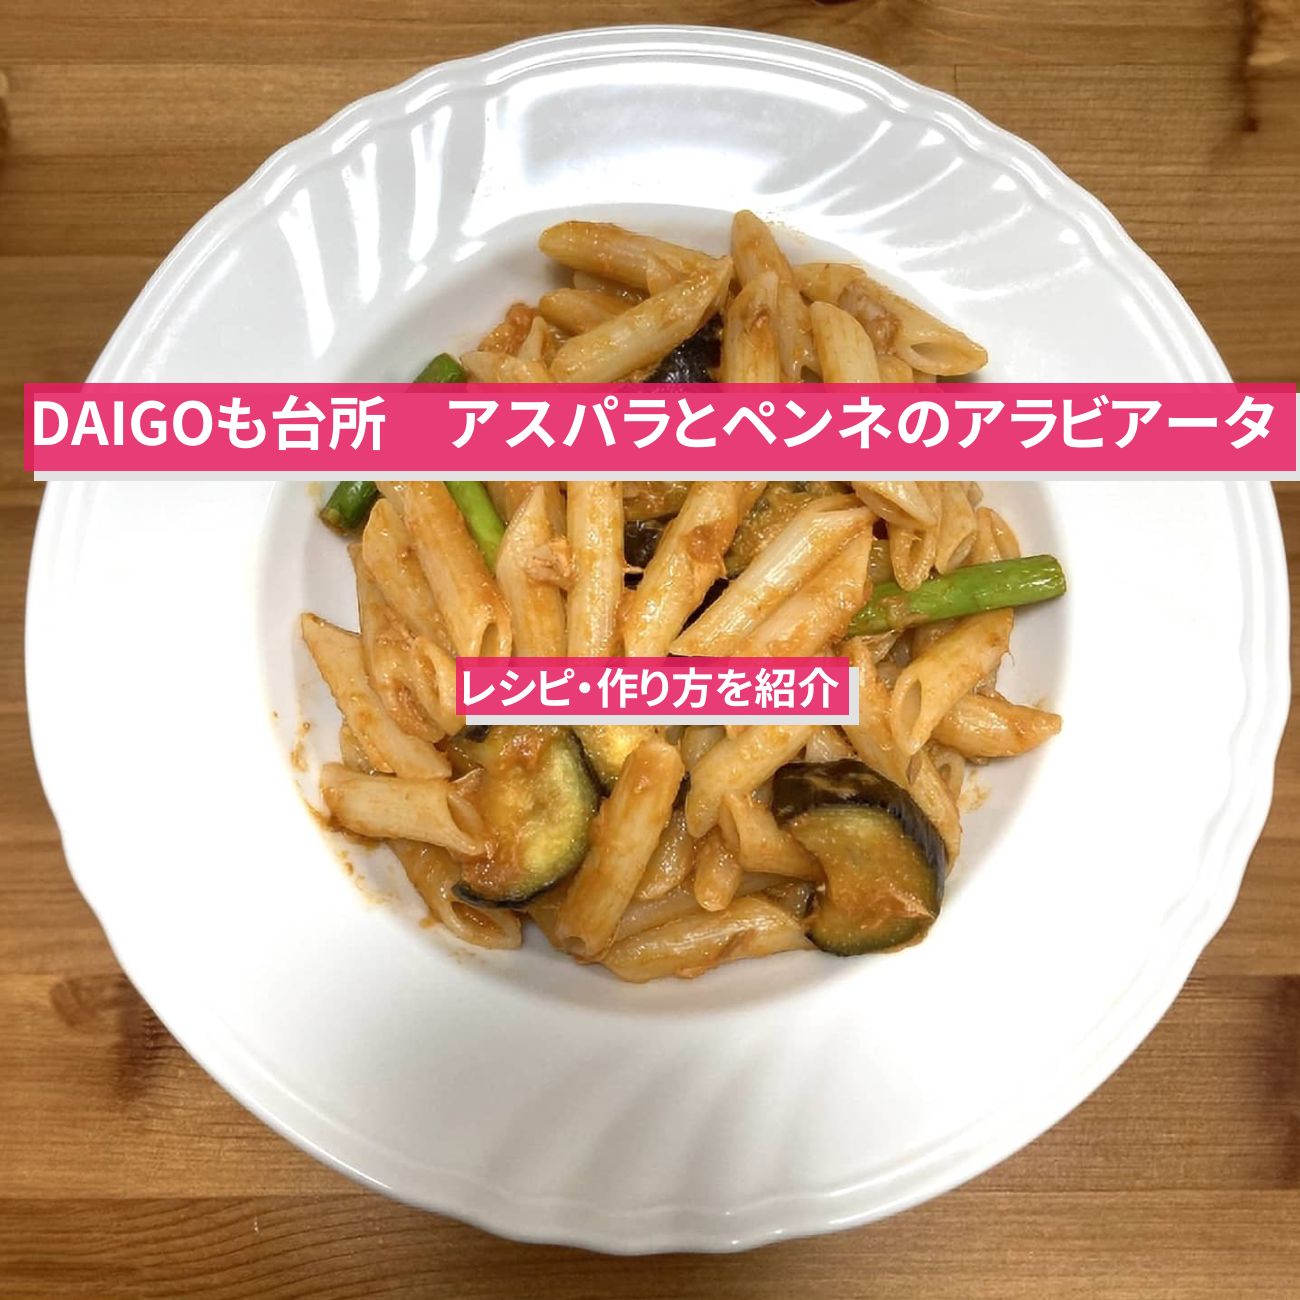 【DAIGOも台所】『アスパラとペンネのアラビアータ』のレシピ・作り方を紹介〔ダイゴも台所〕